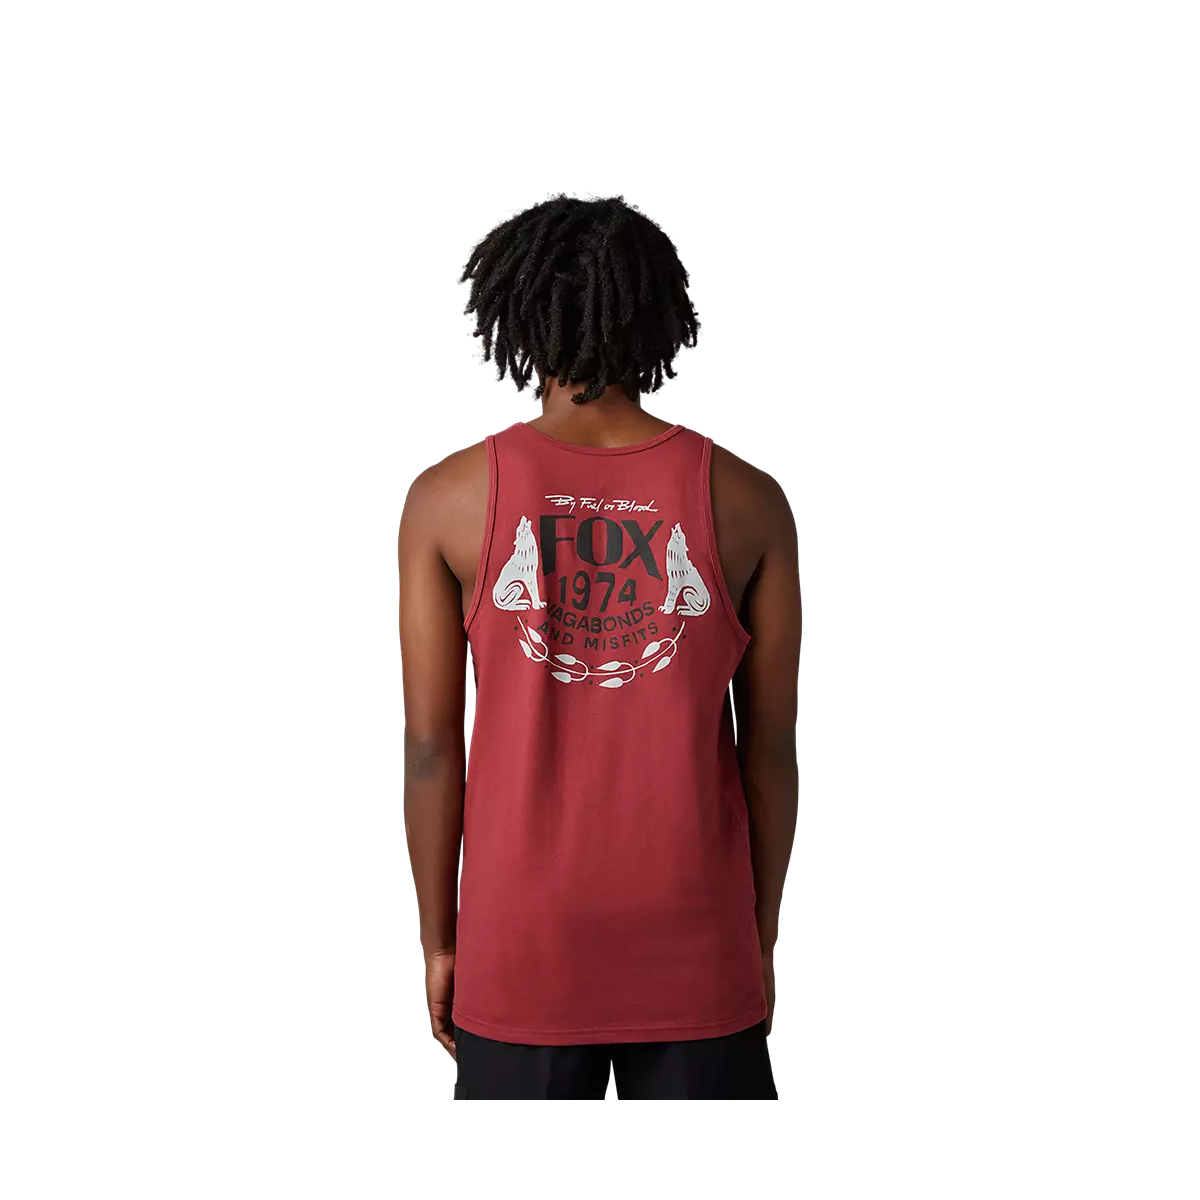 espalda de Camiseta sin mangas Fox PREMIUM Predominant COLOR rojo de calle tipo casual 30560-371